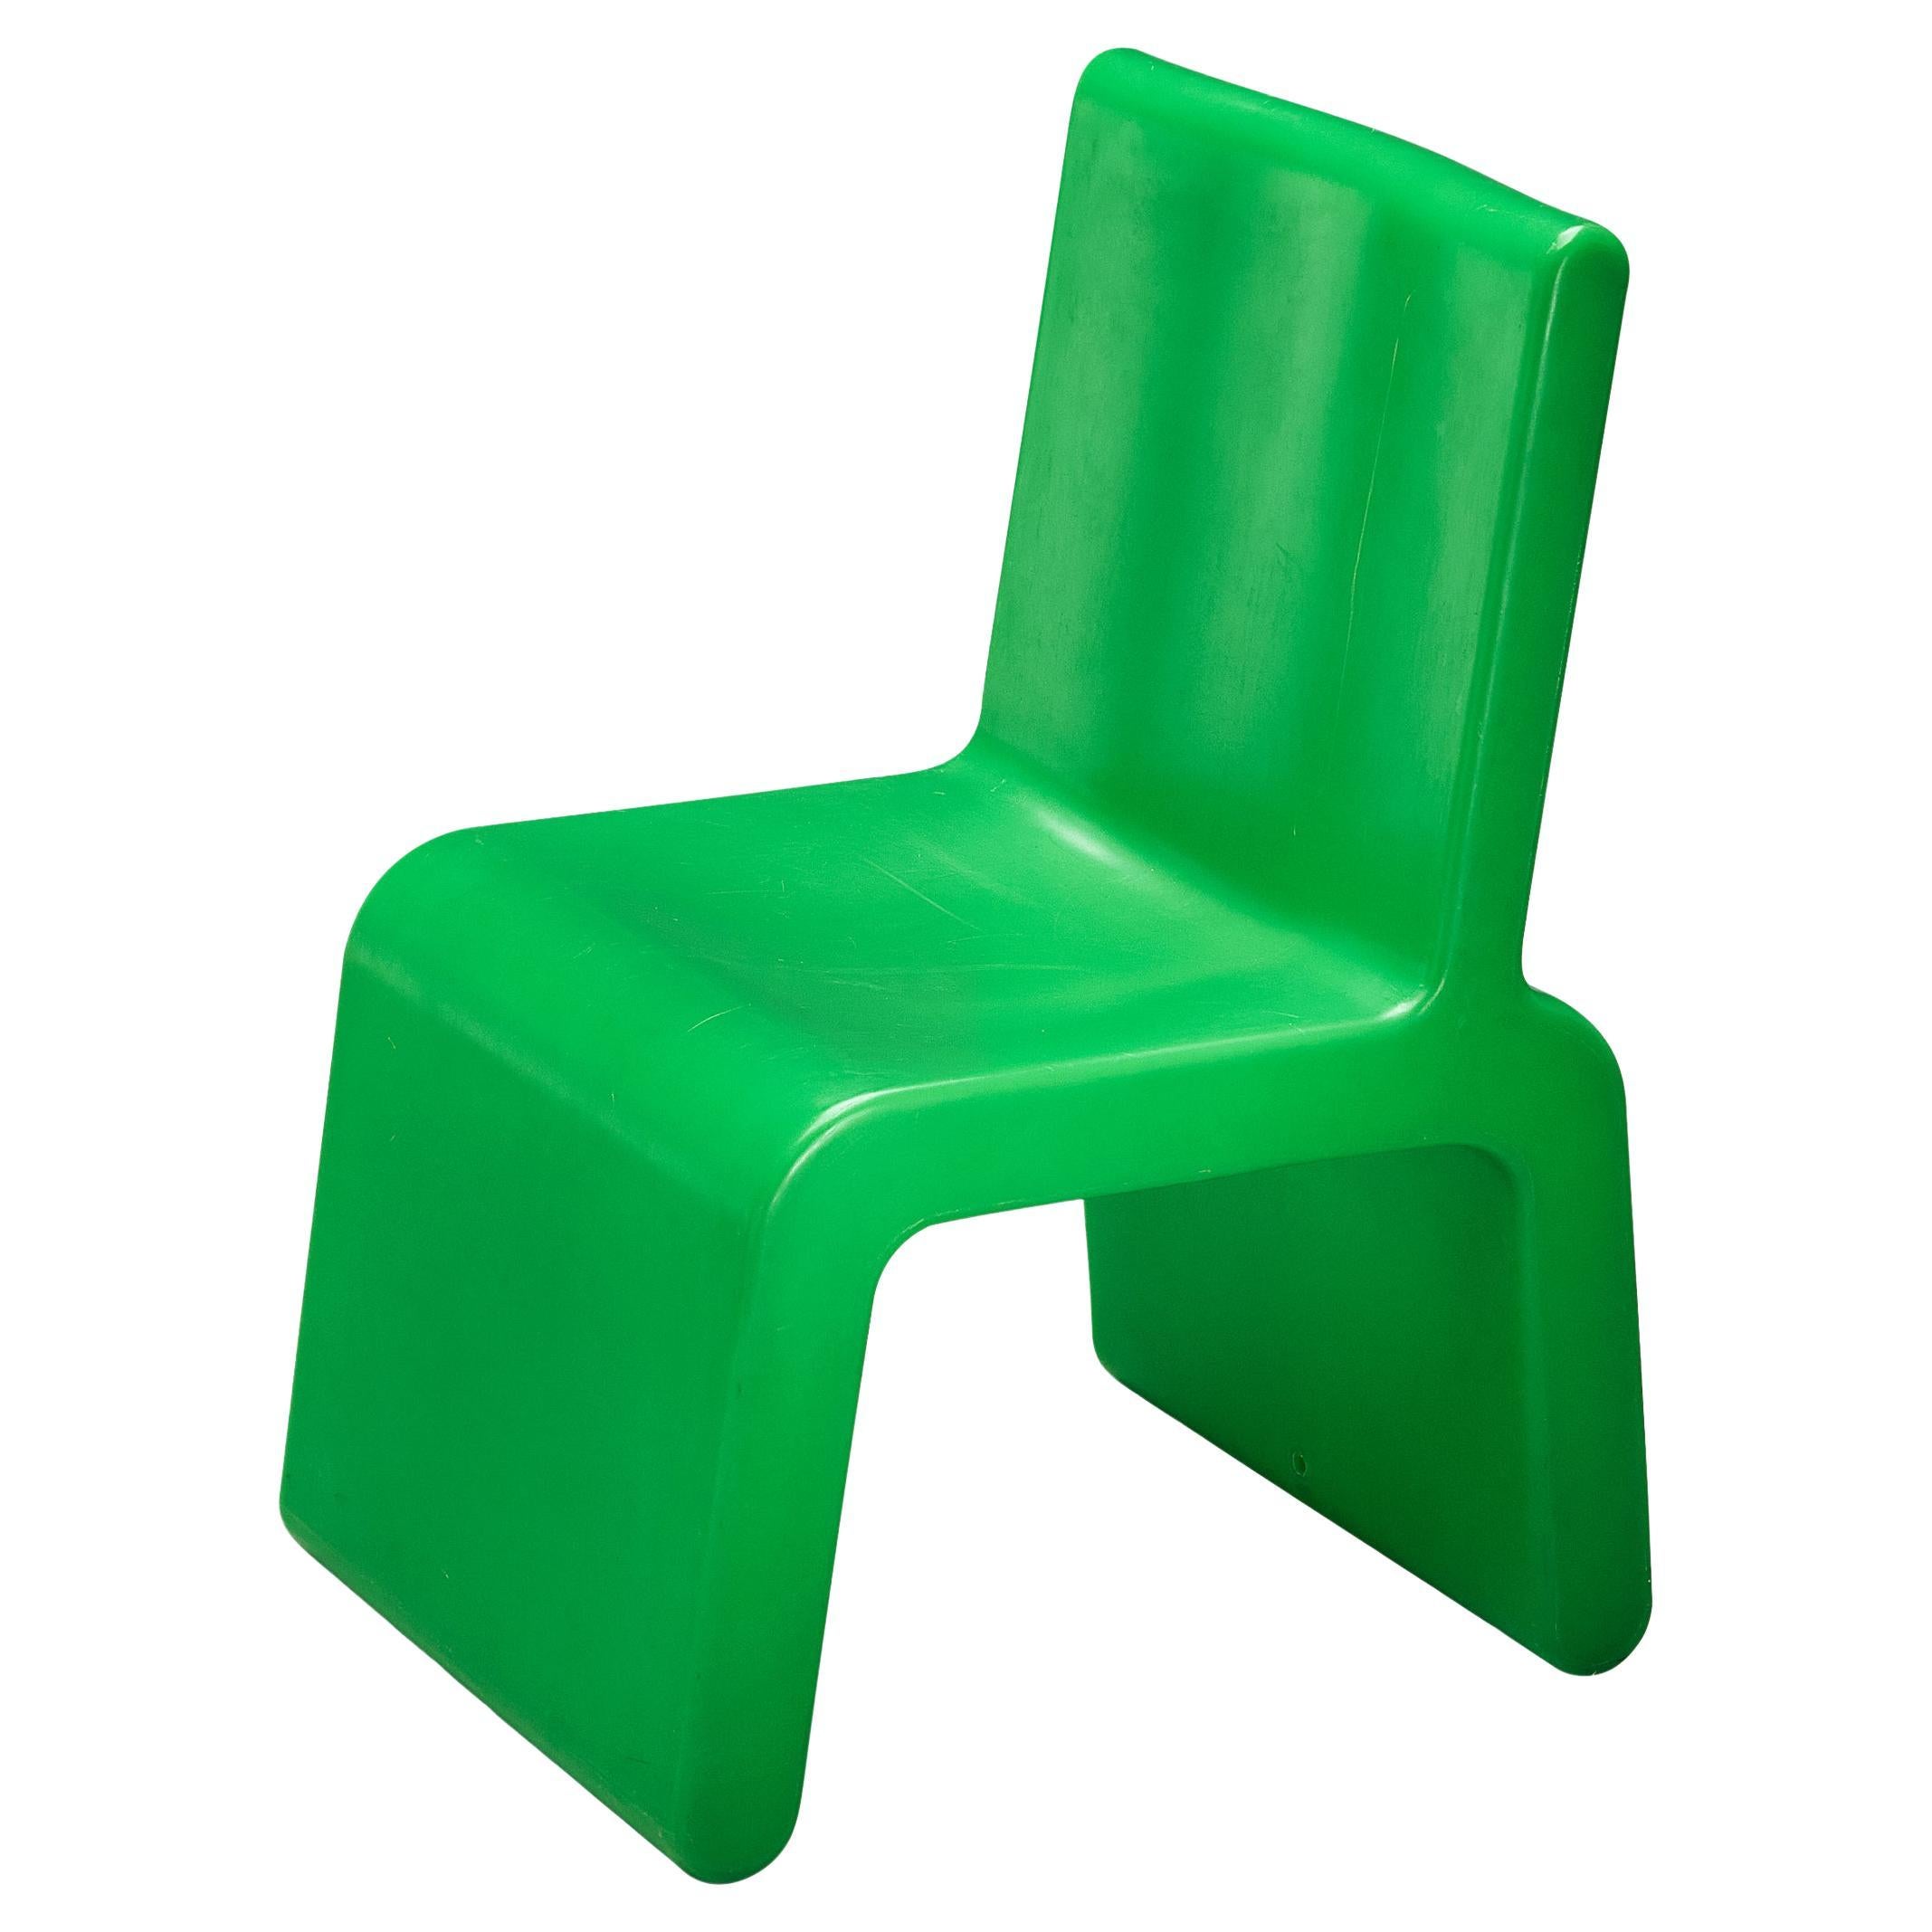 Chaise « Kiss the Future » de Marc Newson en polypropylène moulé vert 